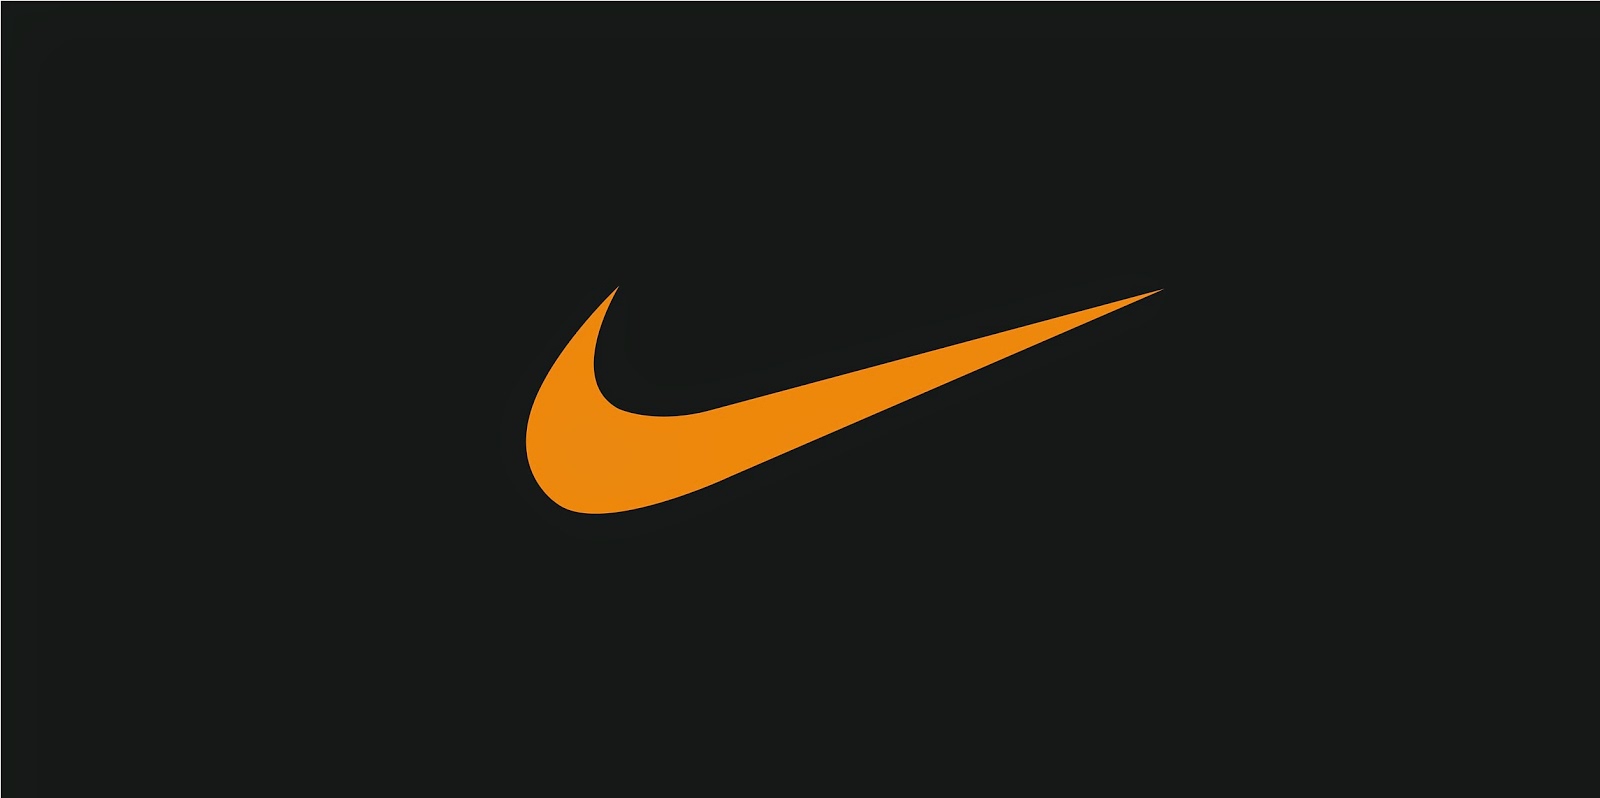 Cool Nike Logos Image HD Wallpaper